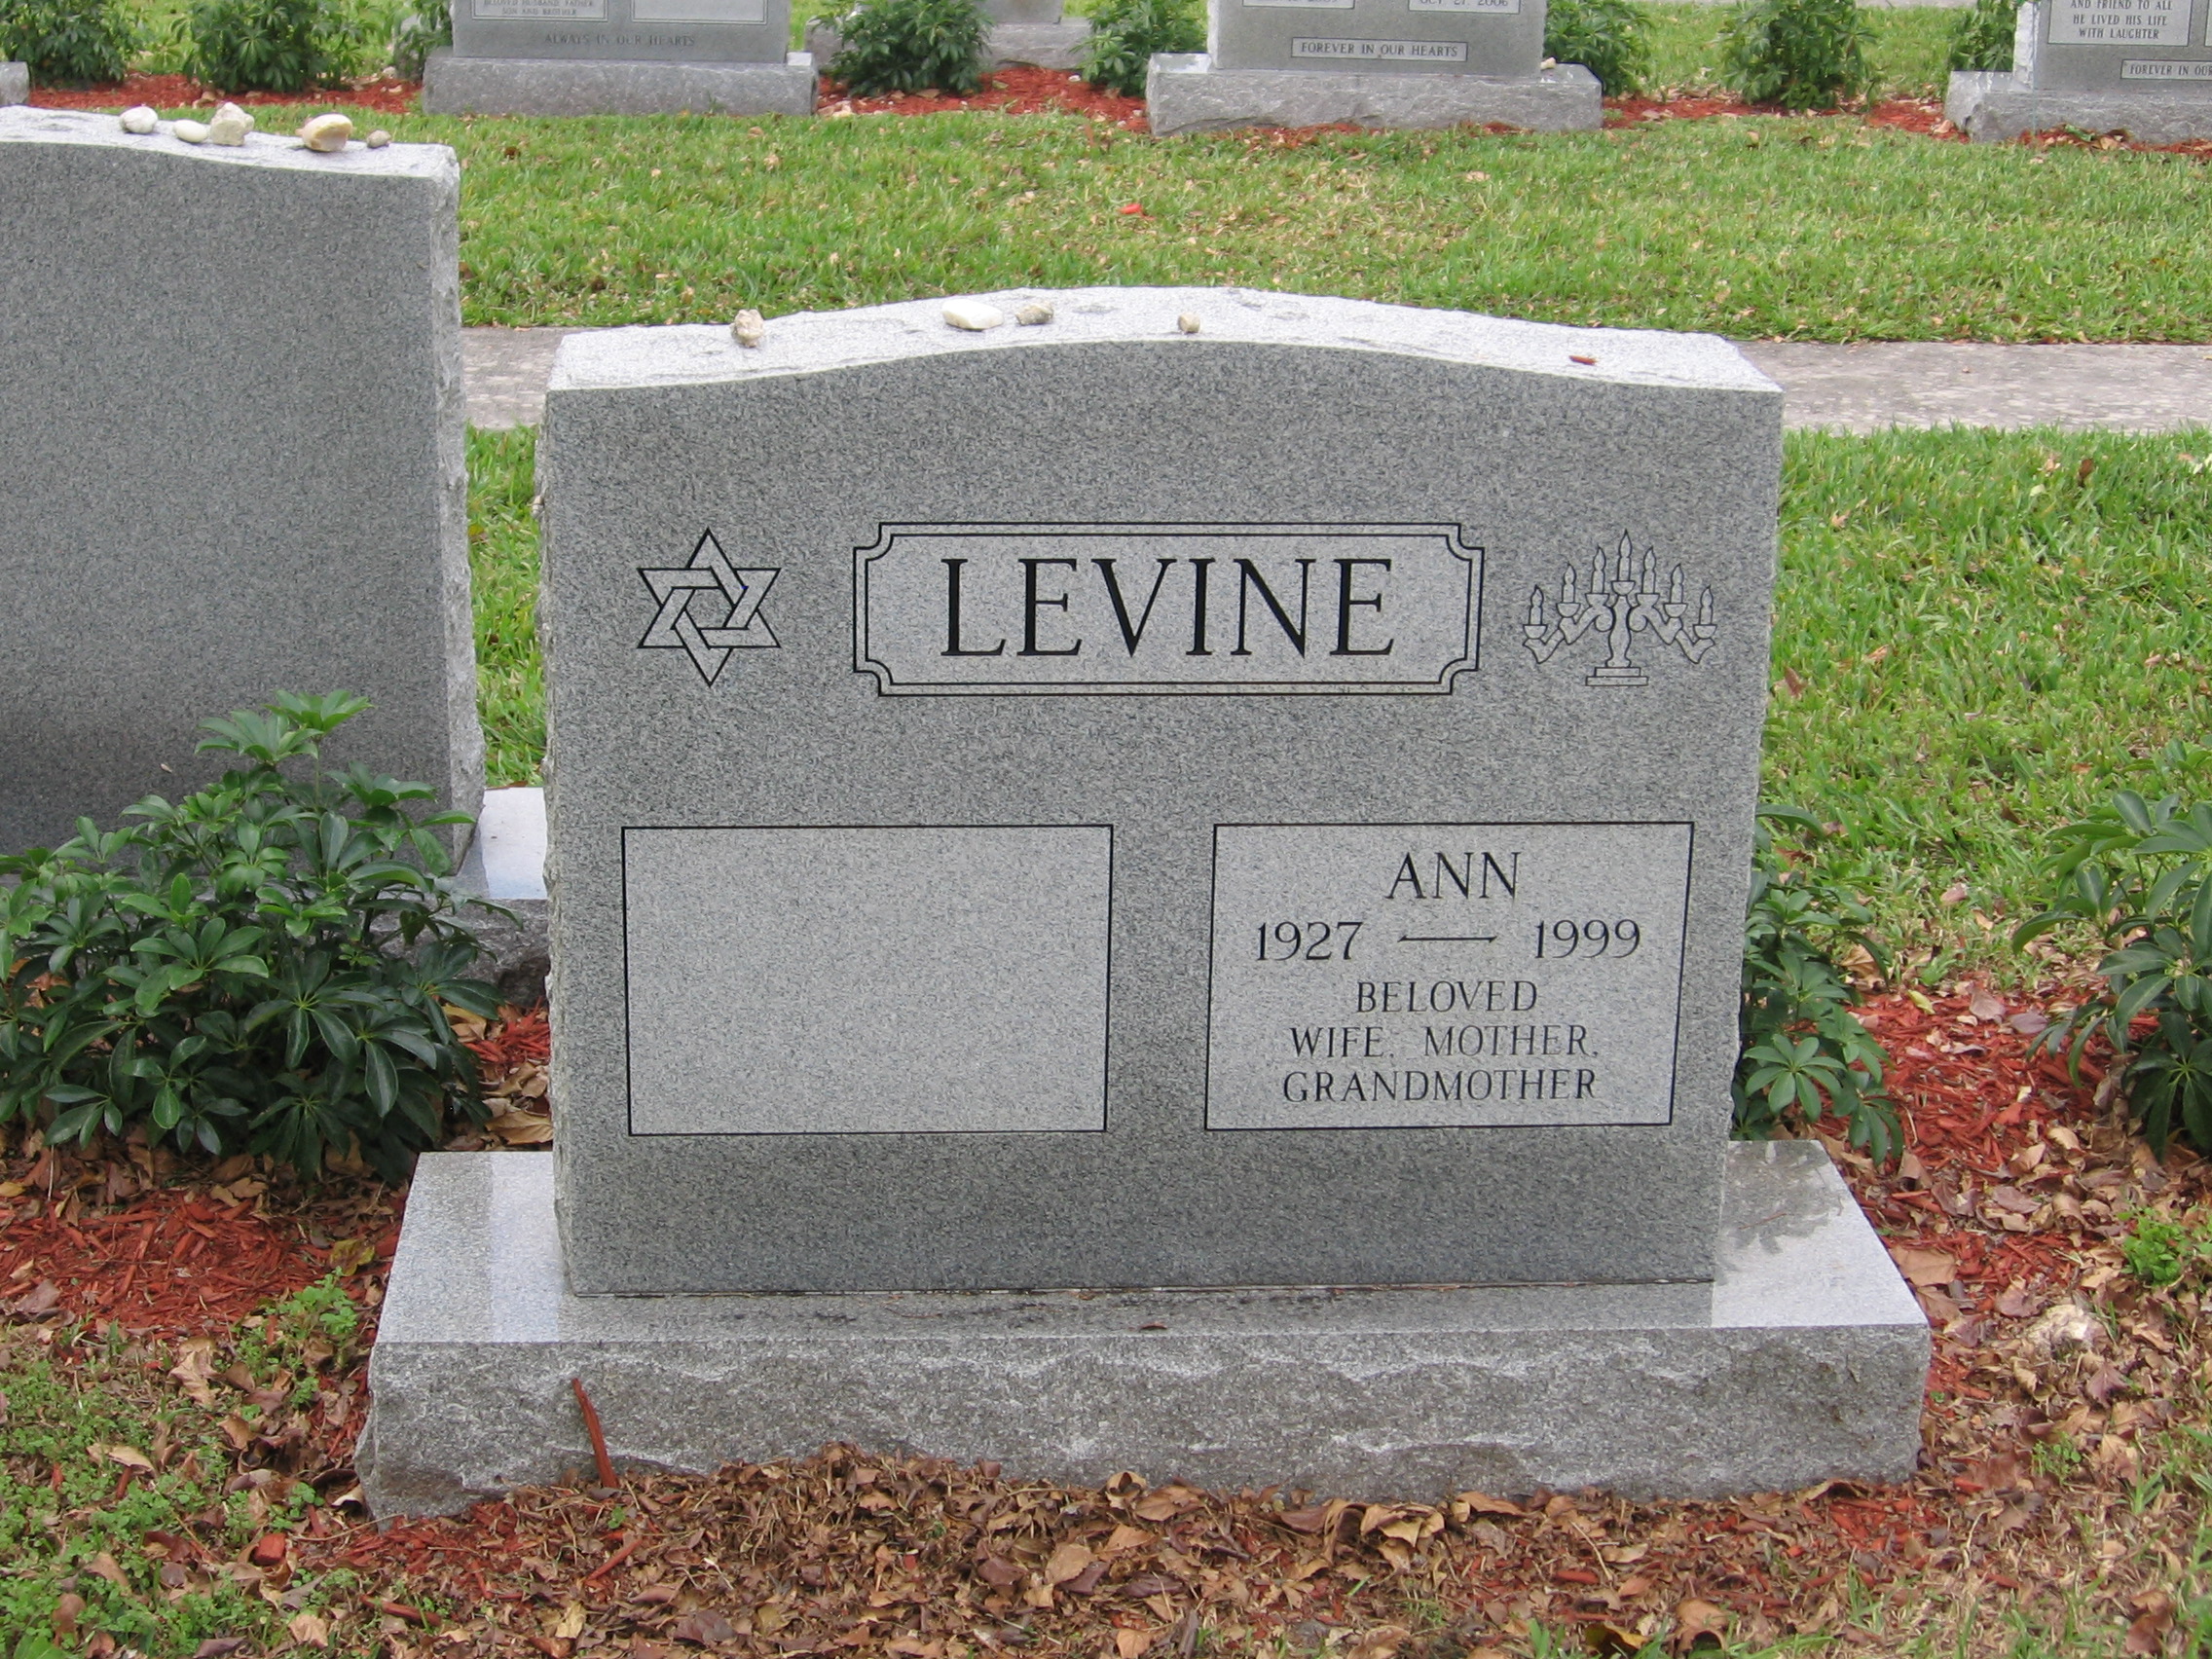 Ann Levine